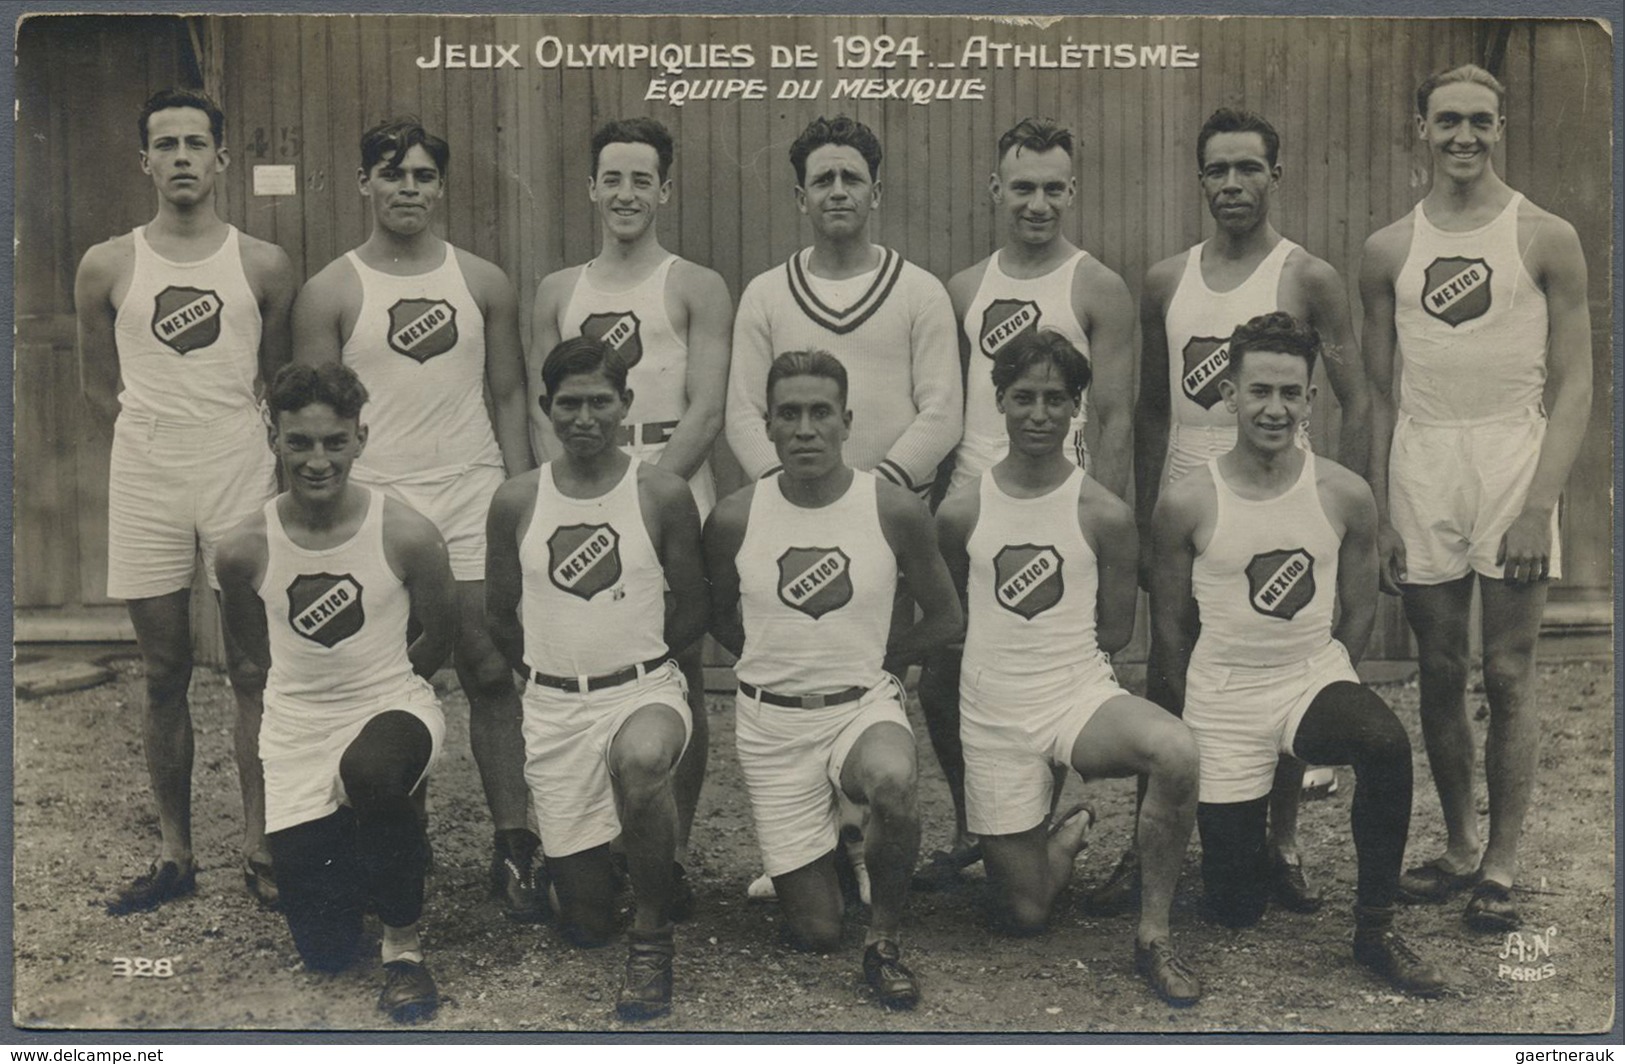 Br Thematik: Olympische Spiele / olympic games: 1924, Paris, sieben verschiedene Fotokarten "Leichtathl